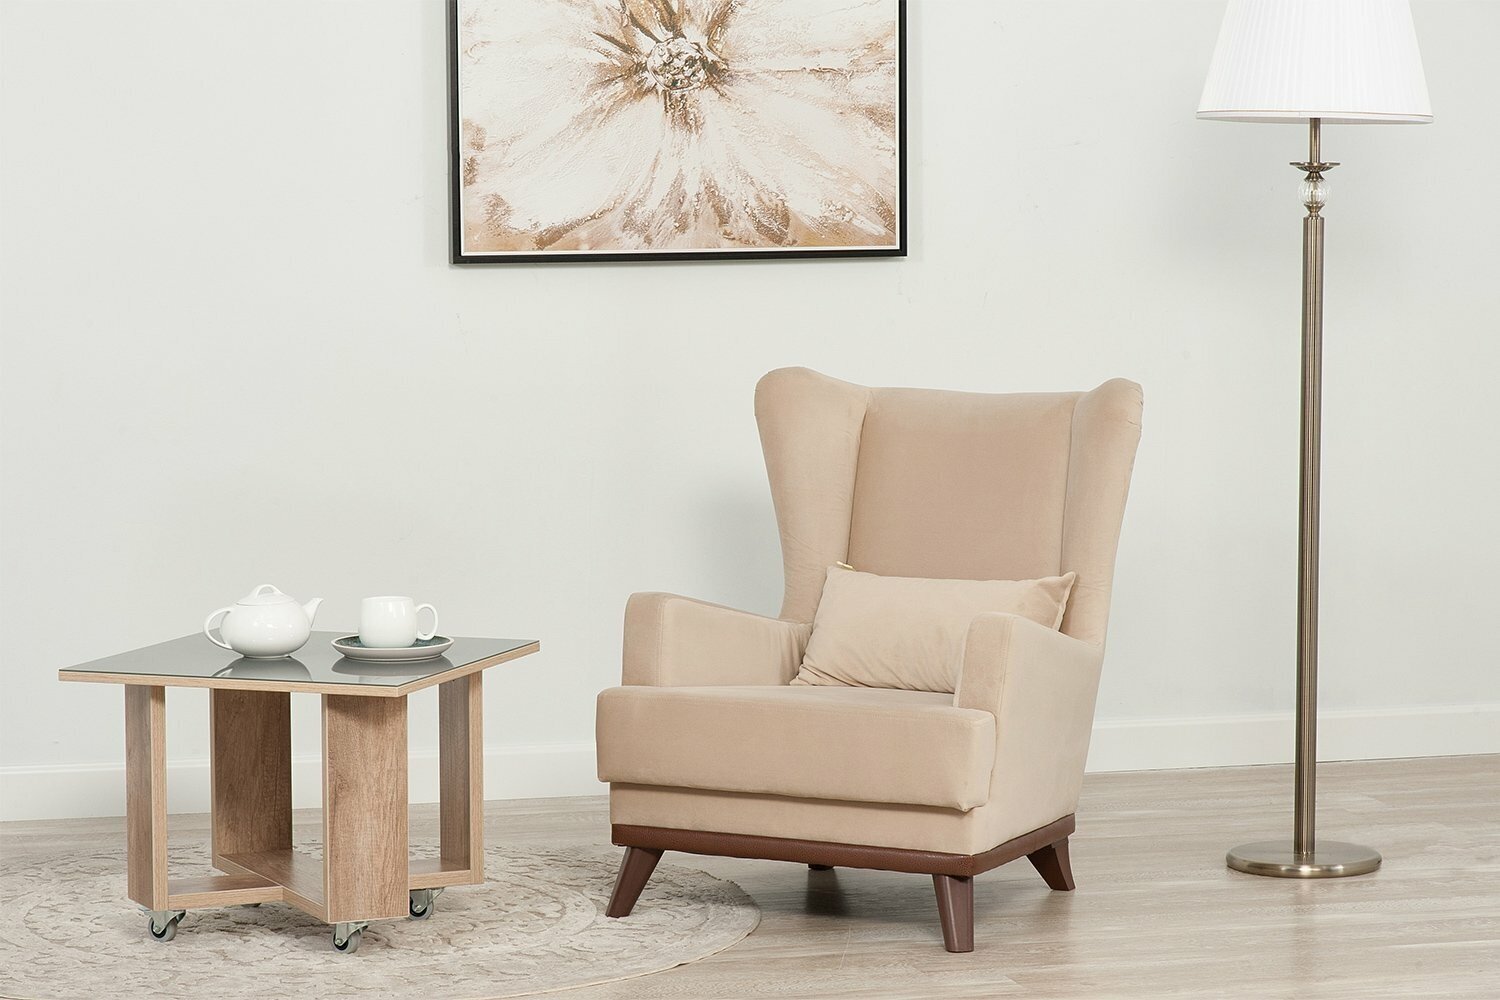 Кресло Hoff Людвиг, цвет светло-коричневый